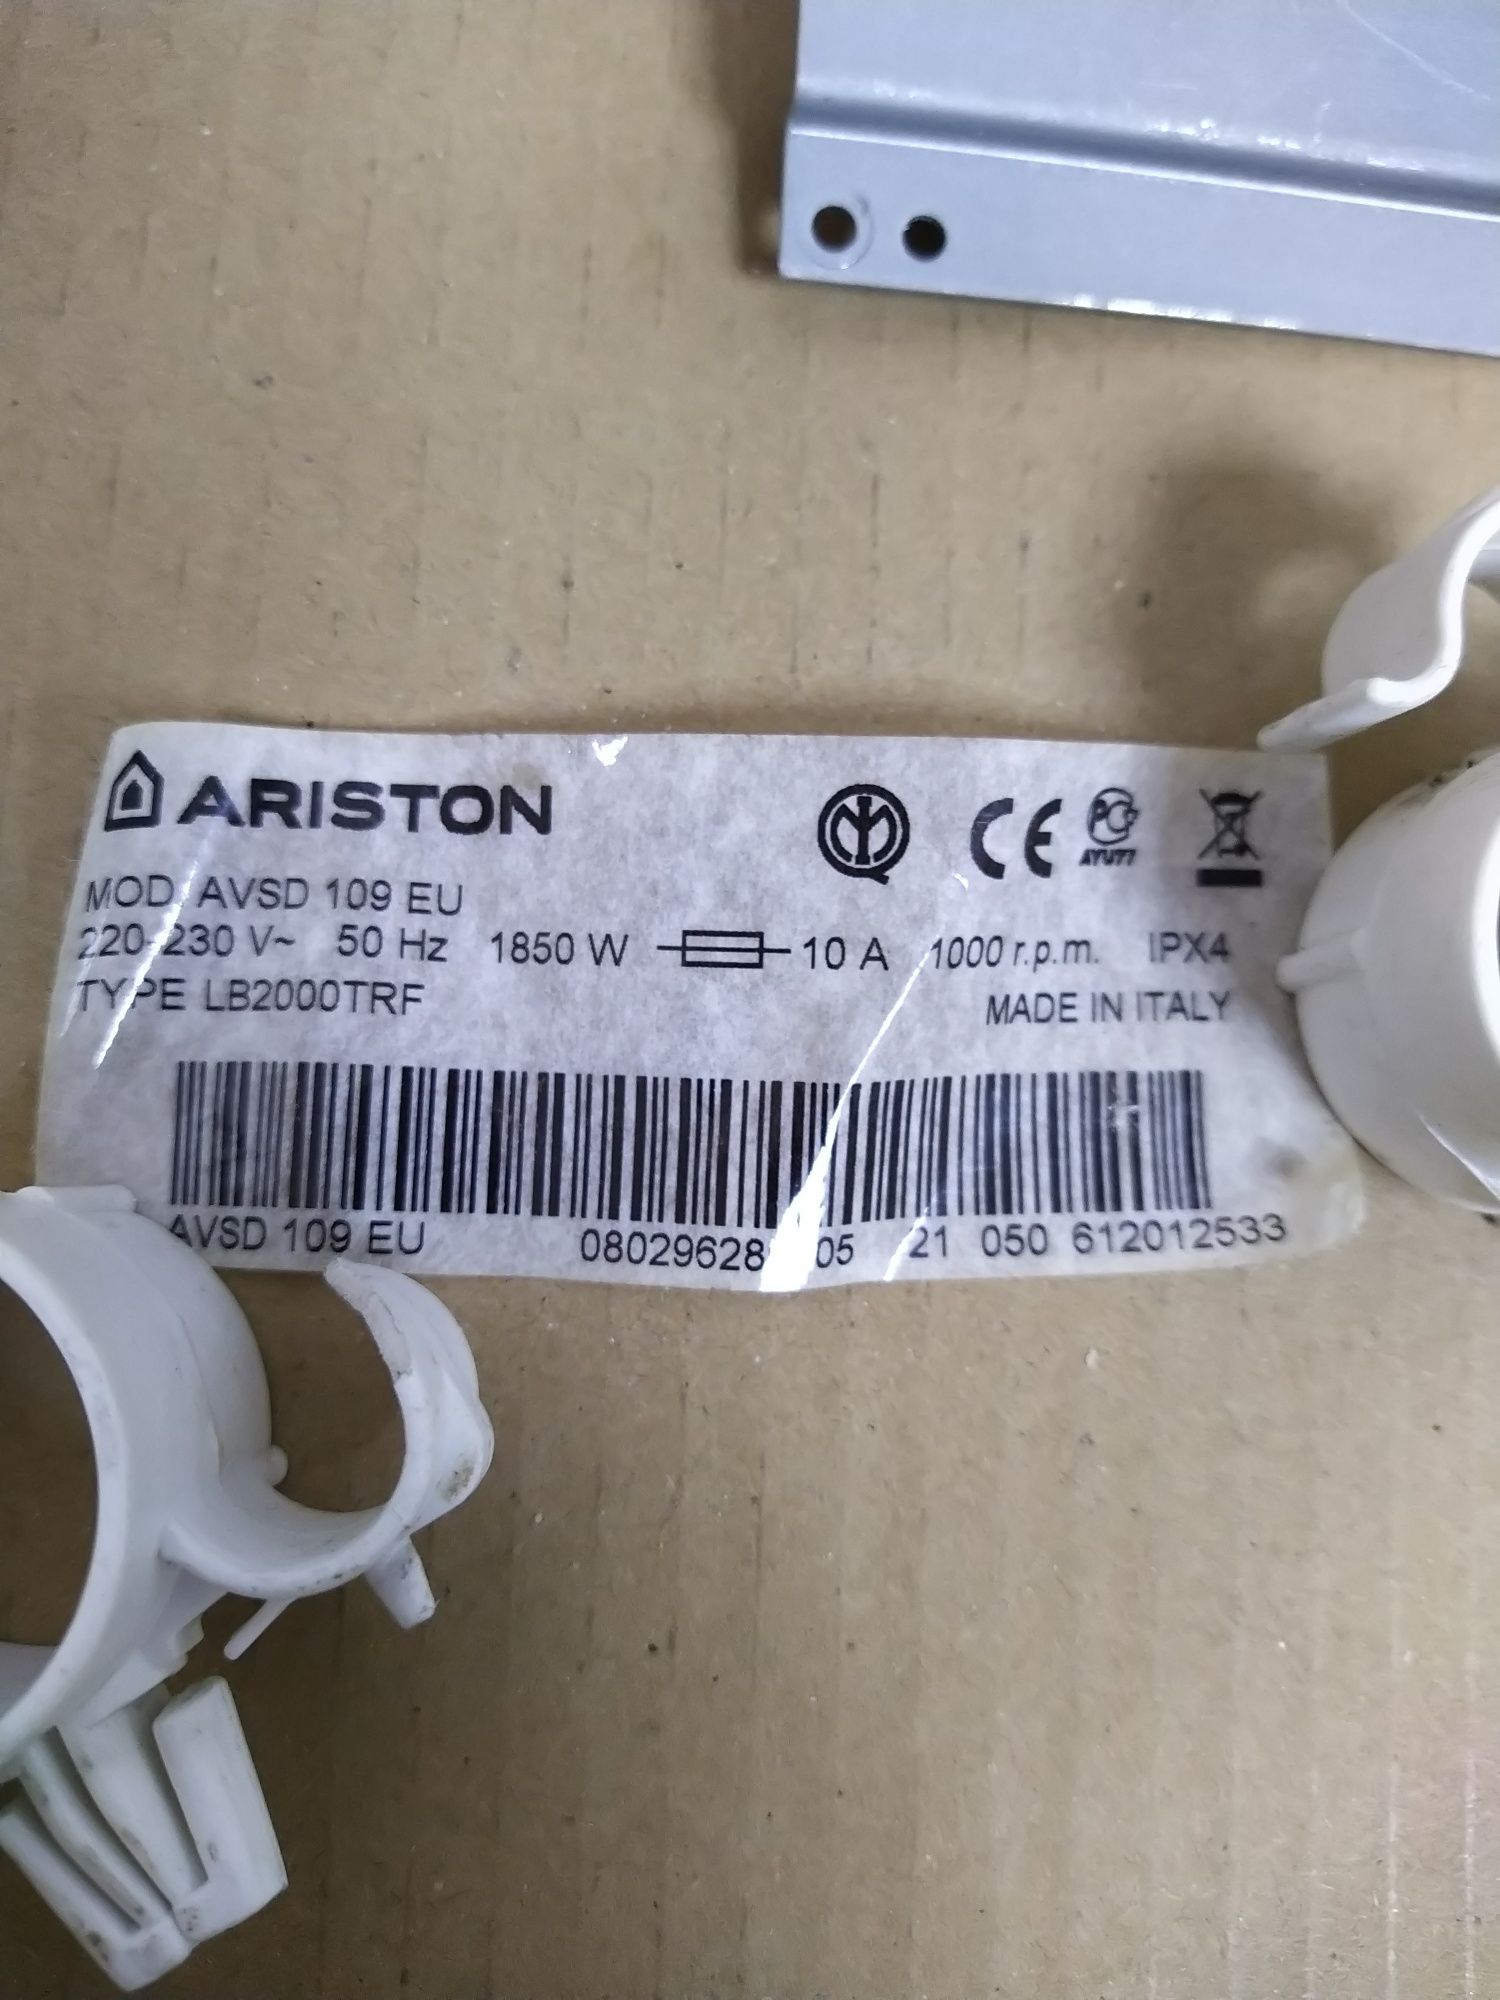 Запчасти стиралки Ariston AVSD 109
AVSD 109 EUAVSD 109 EU
M